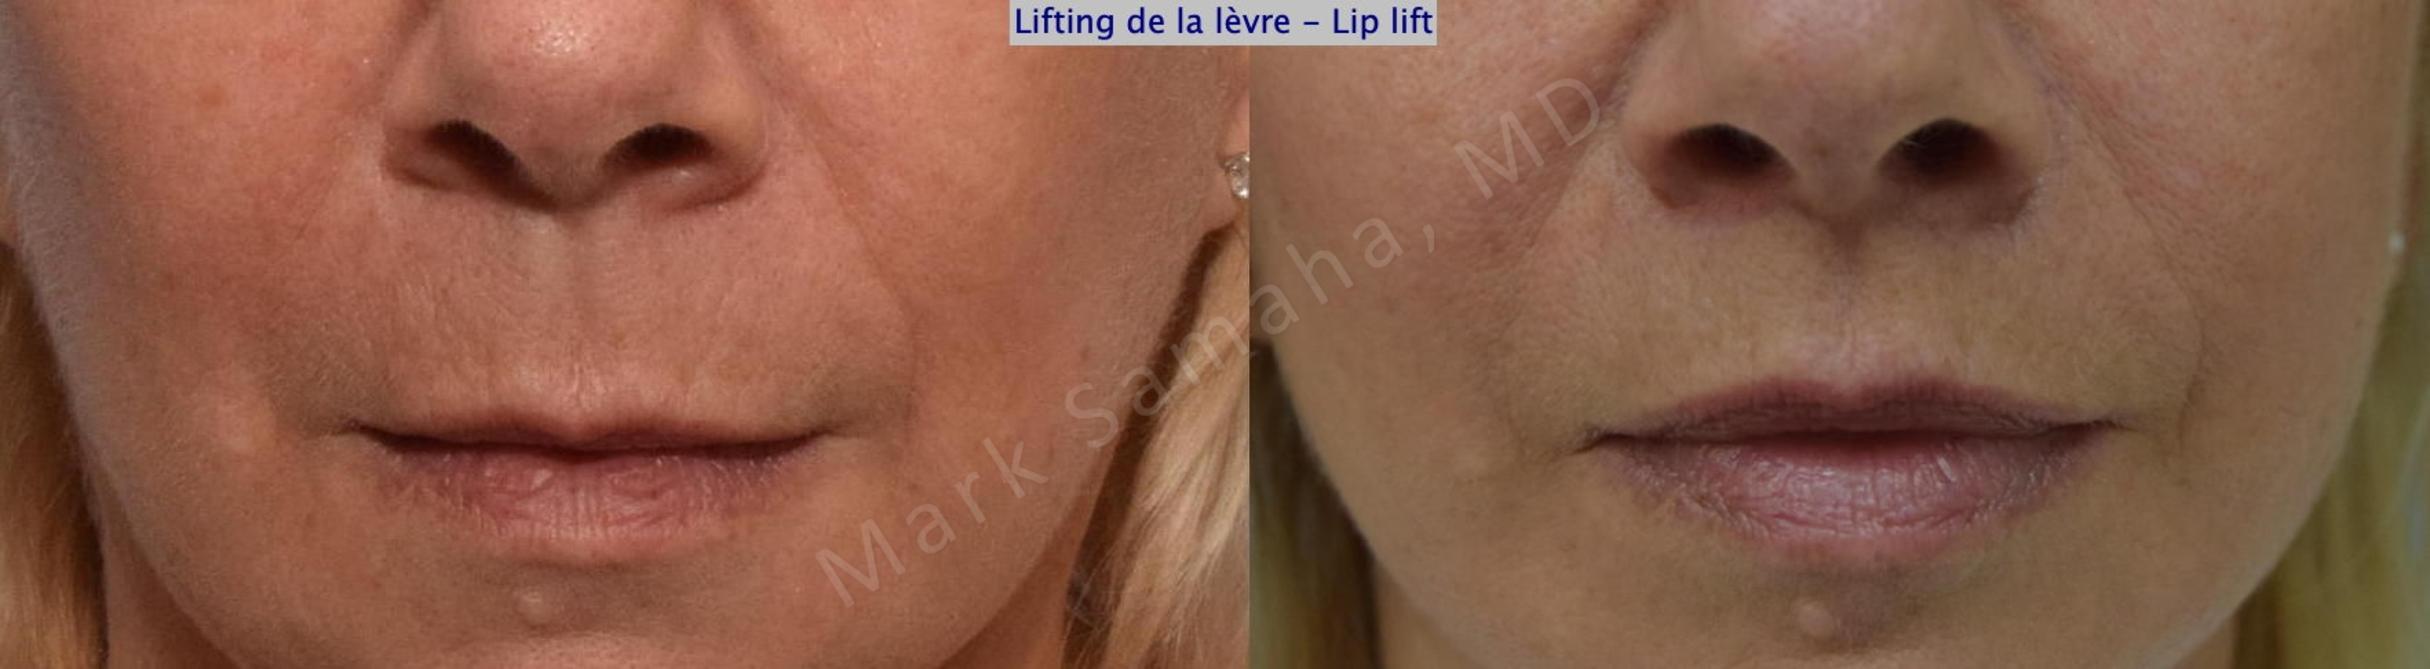 Before & After Lifting de la lèvre supérieure / Lip Lift  Case 169 Front View in Mount Royal, QC